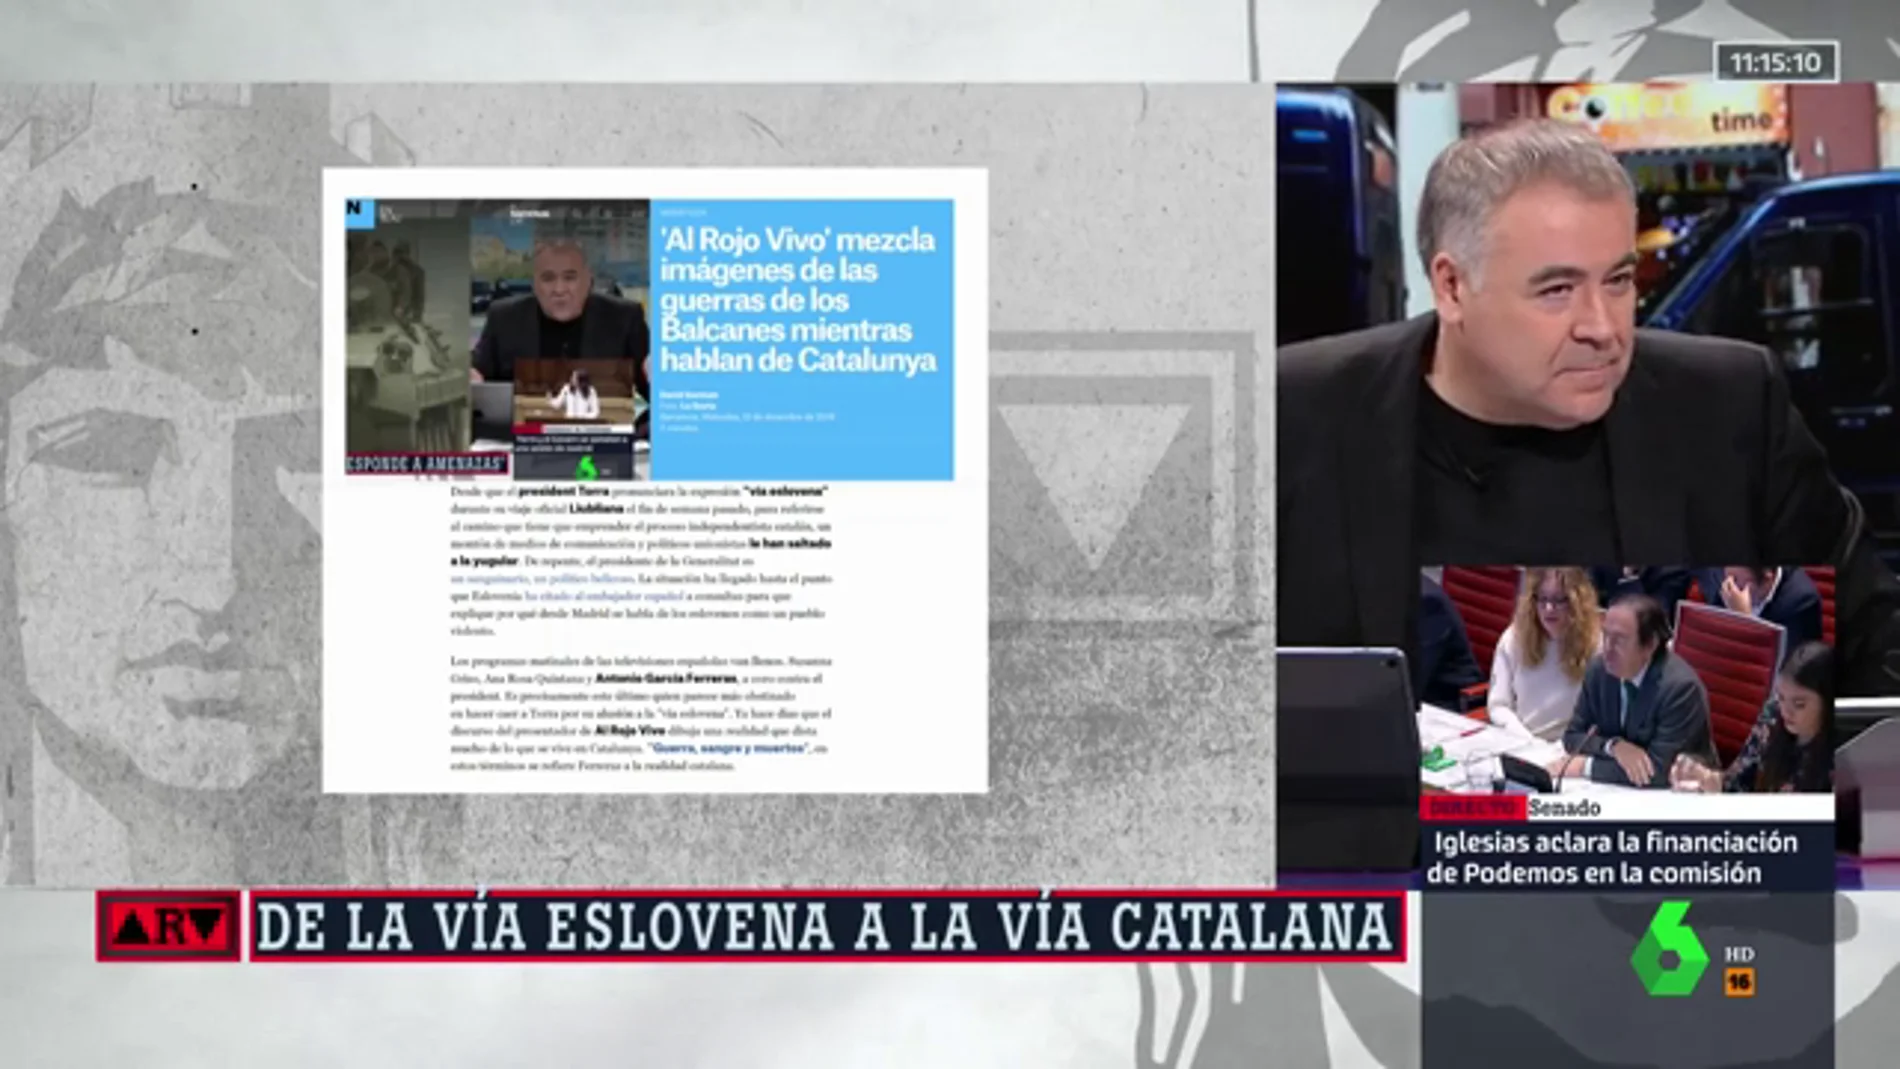 La respuesta de Ferreras a los ataques de los "muñequitos mediáticos de José Luis Moreno" que maneja Puigdemont